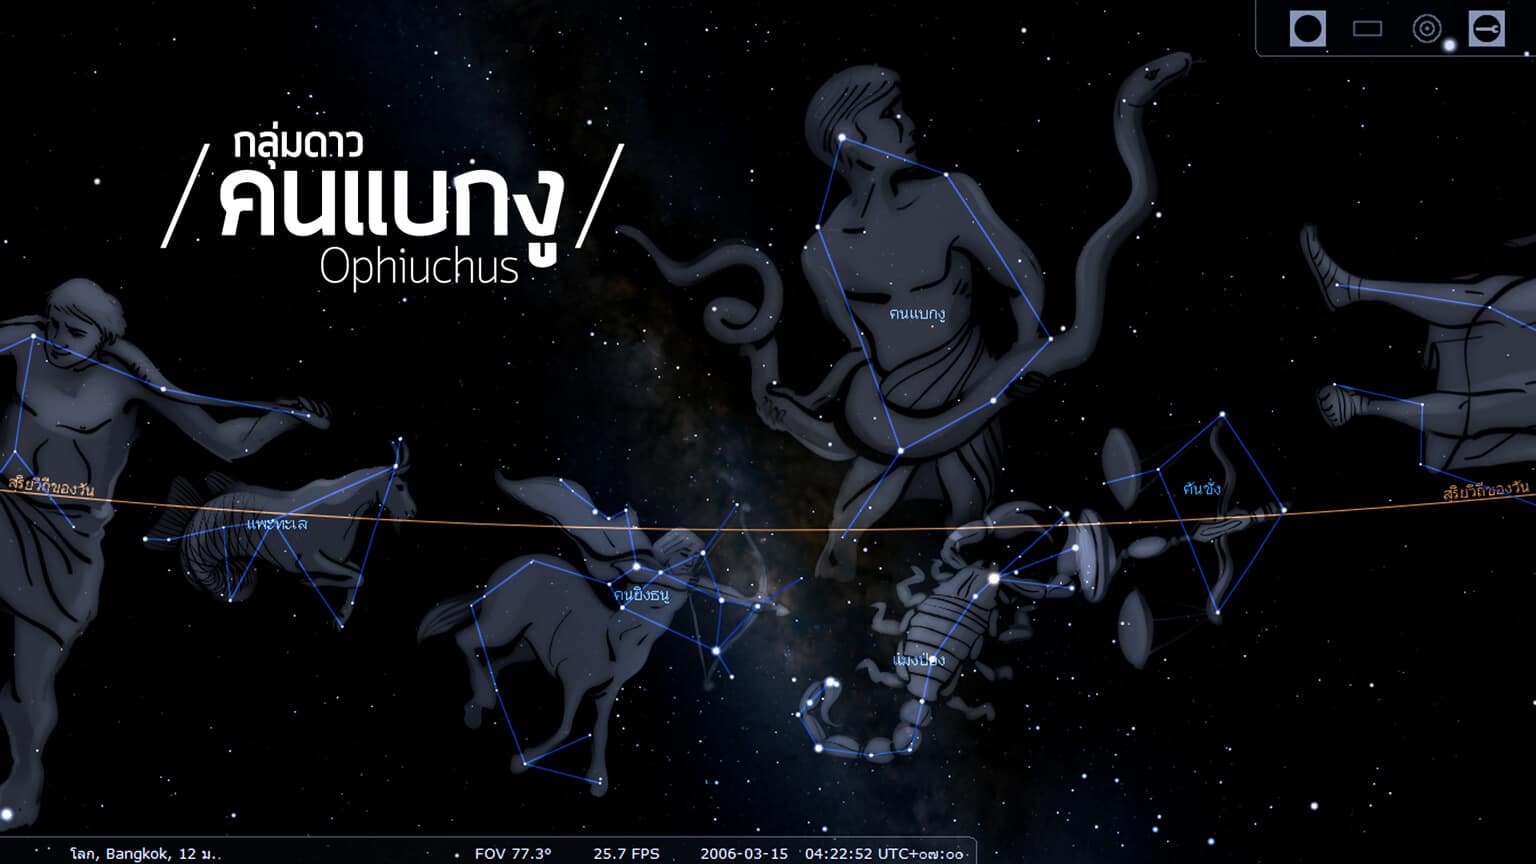 กลุ่มดาวคนแบกงู (Ophiuchus) เป็นกลุ่มดาวจักรราศีกลุ่มที่ 13 เนื่องจากมีขาข้างหนึ่งแทรกไปในกึ่งกลางระหว่างกลุ่มดาวแมงป่องกับกลุ่มดาวคนยิงธนู กลุ่มดาวคนแบกงูแทนด้วยชายคนหนึ่งกำลังอุ้มงูไว้ ทำให้แยกกลุ่มดาวงูออกเป็นสองส่วน คือ หัวกับหาง